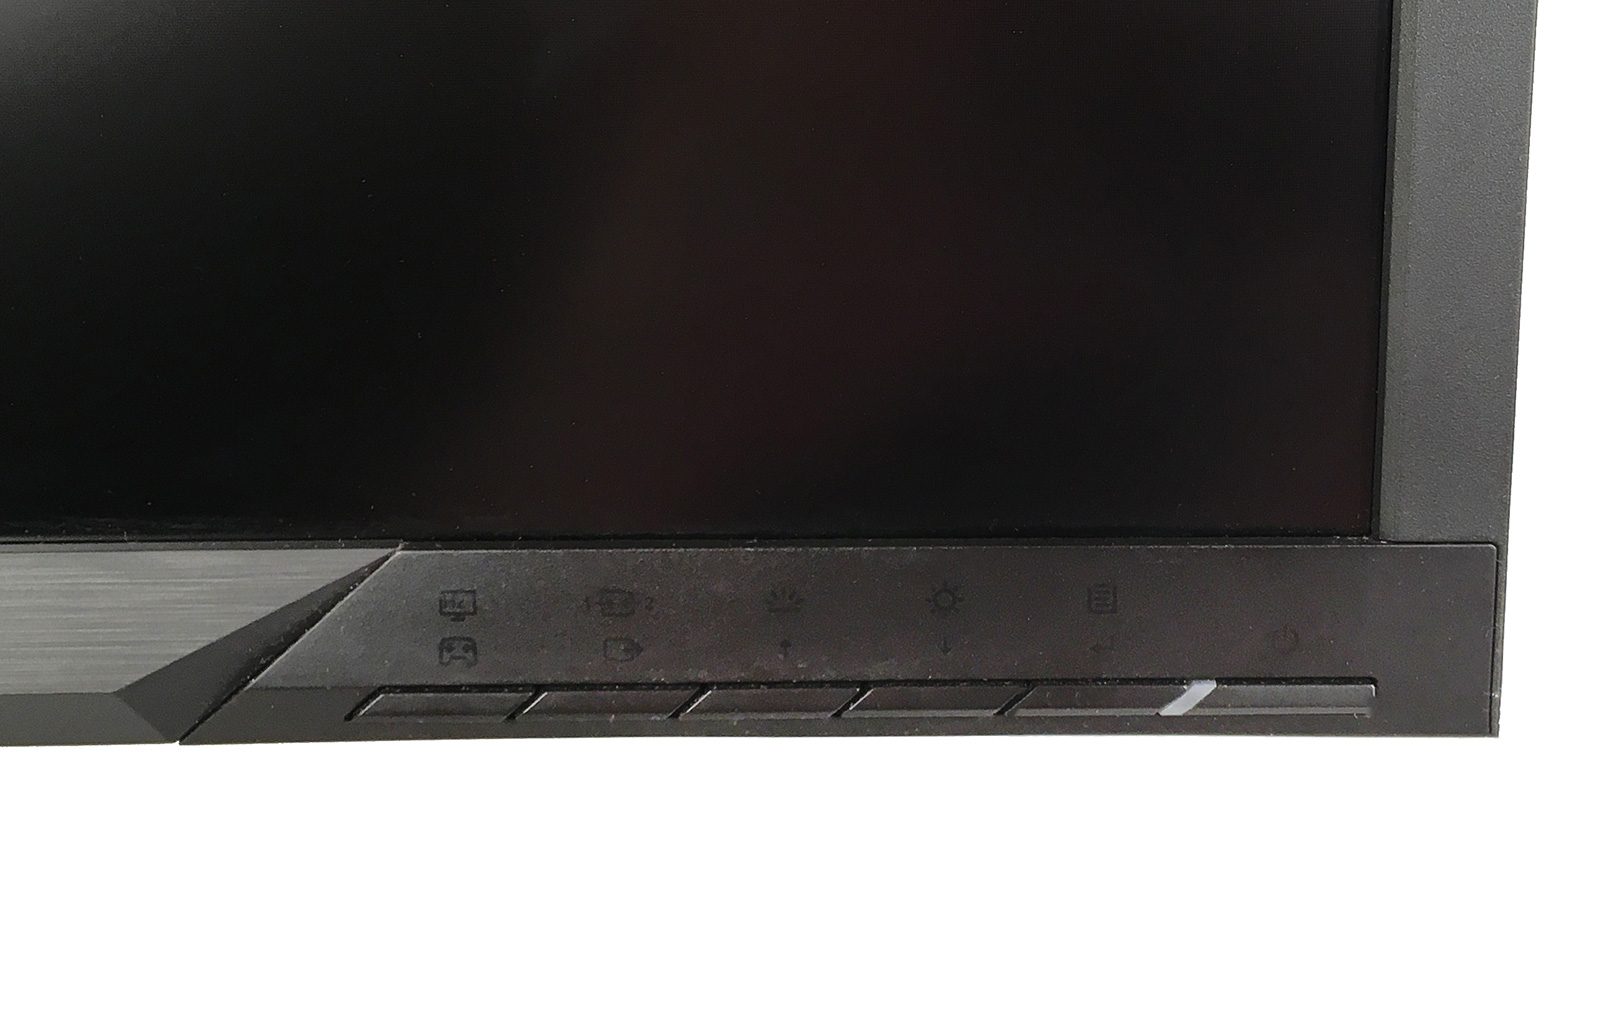 Обзор изогнутого игрового монитора Lenovo Y27g Razer Edition - 5